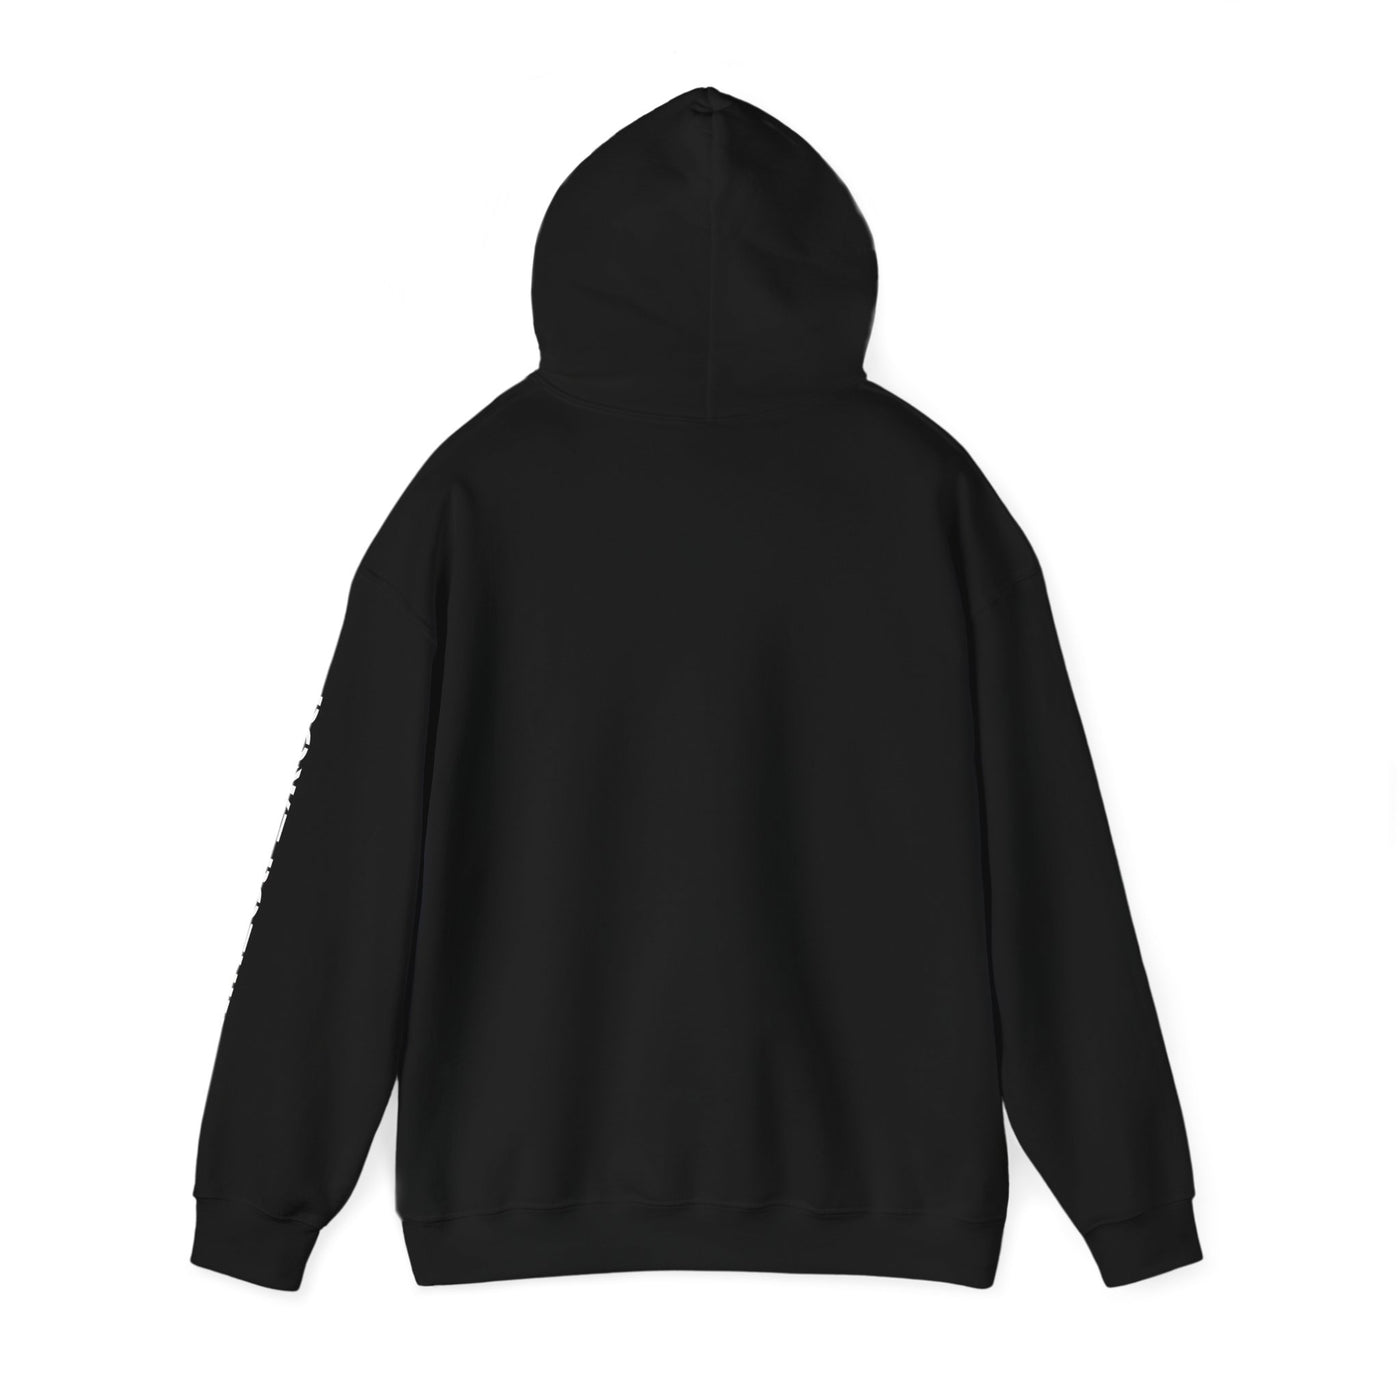 BEER LOVER'S DECLARATION Unisex Heavy Blend™ Hooded Sweatshirt